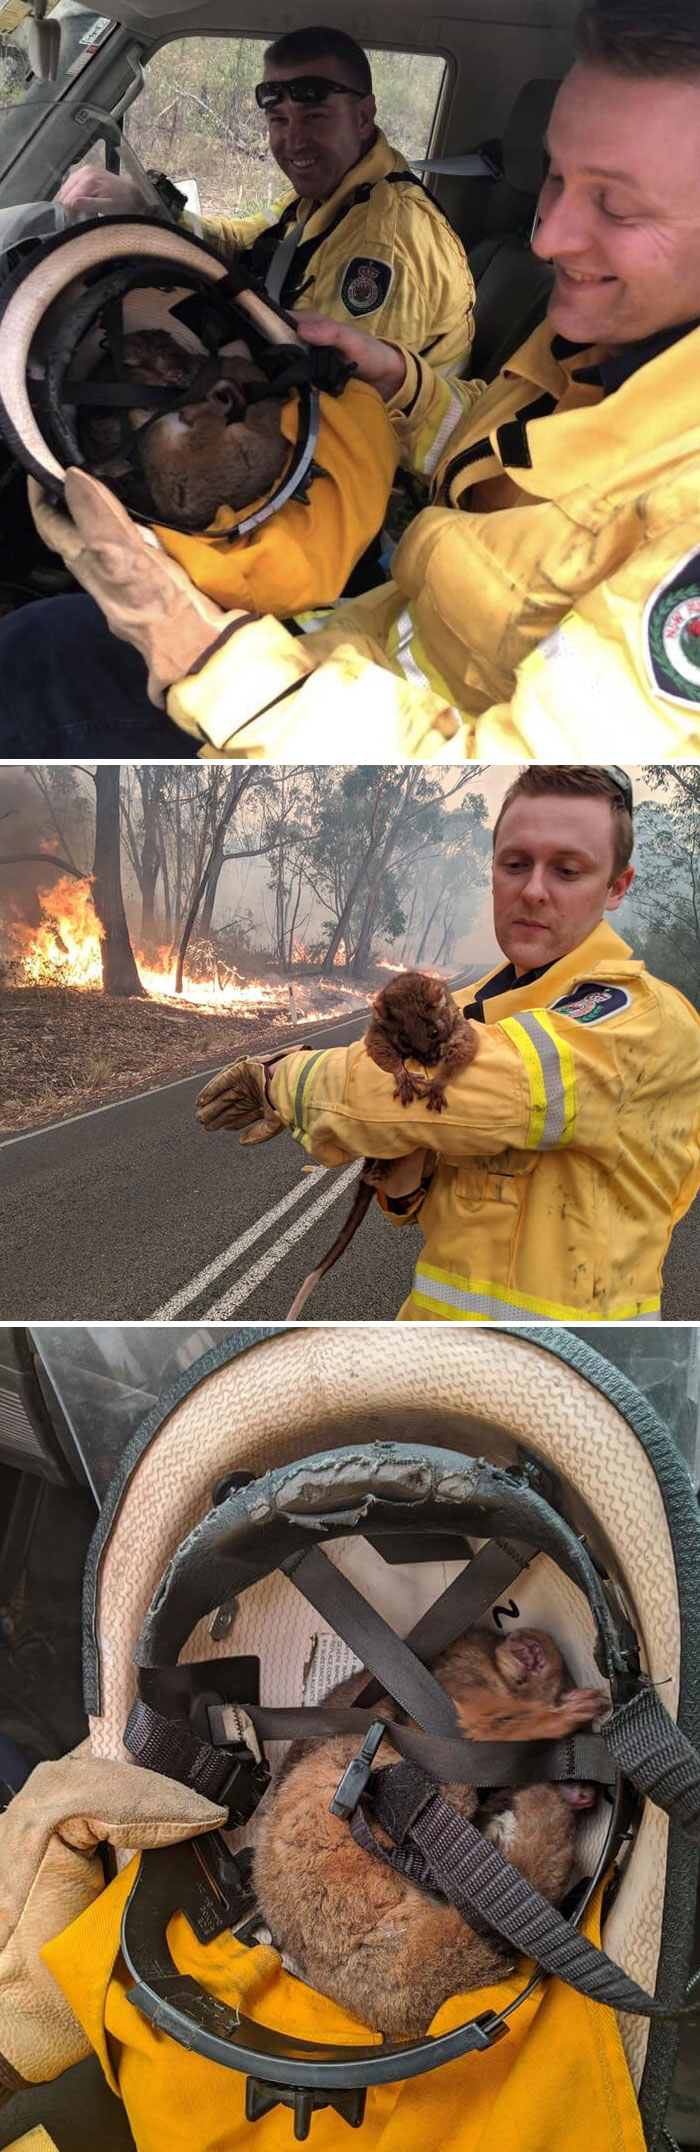 5e144300b1fa6 australia fires photos 29 5e13019aef27e  700 - Internet compatilha 50 fotos que revelam as queimadas na Austrália